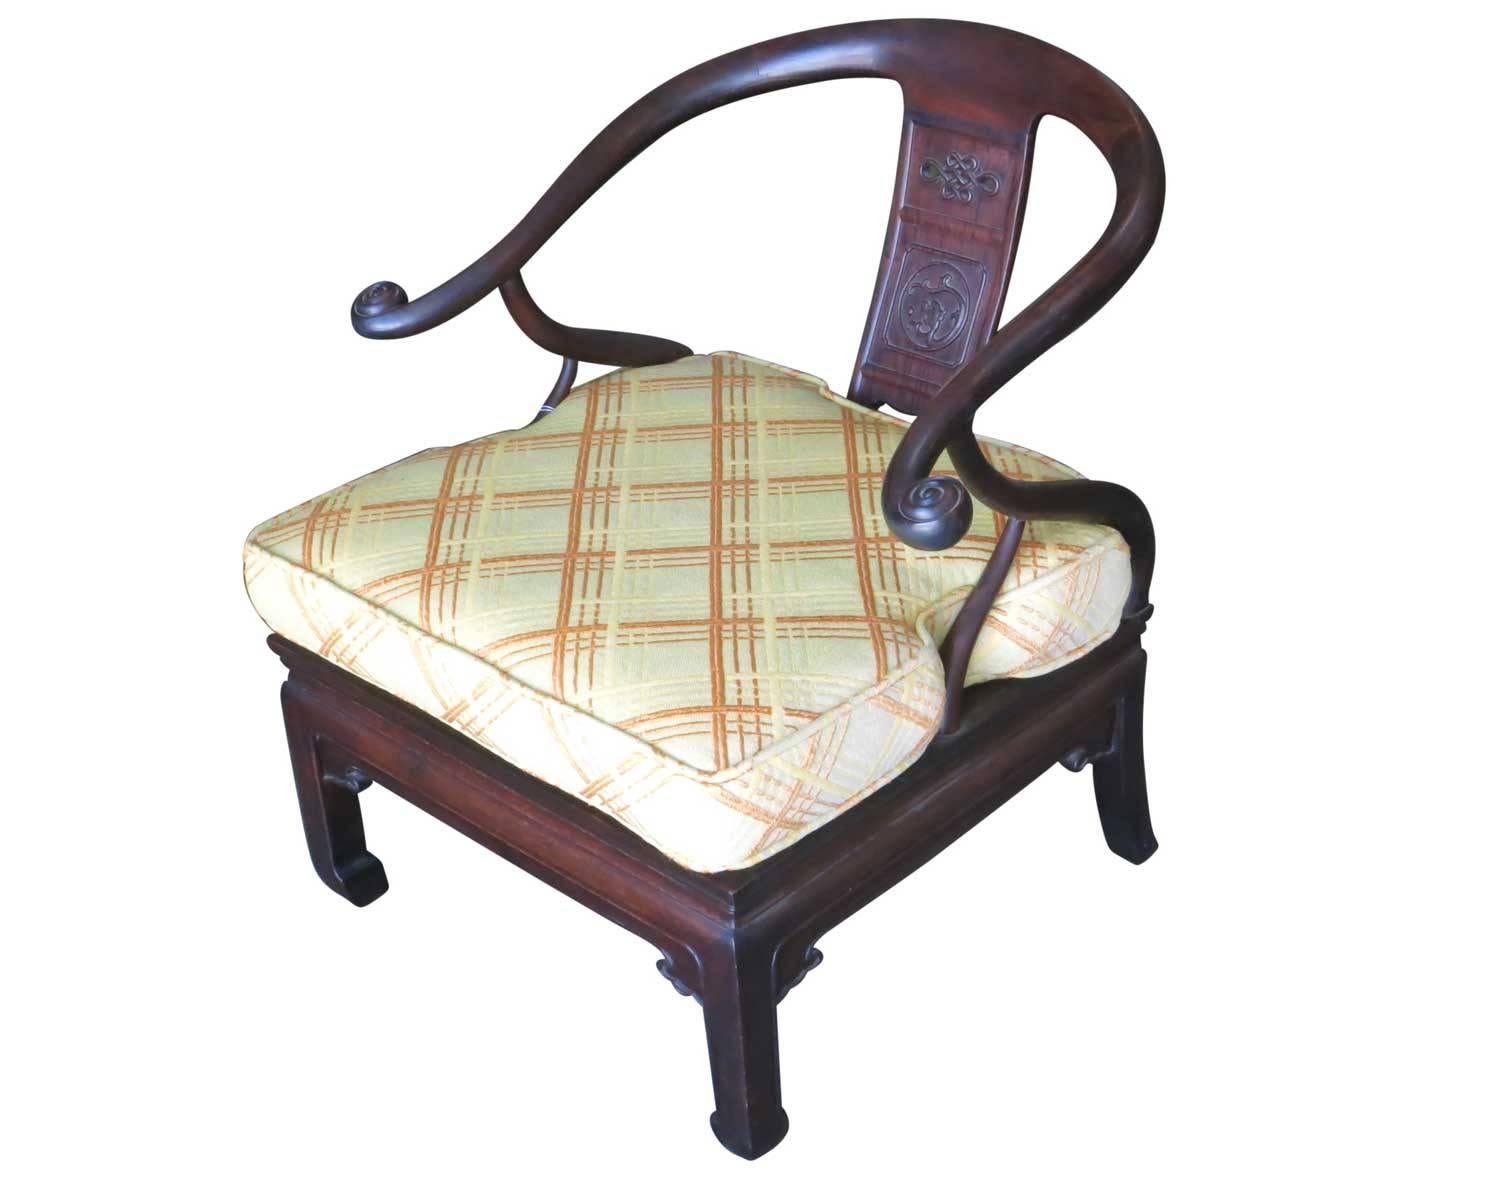 Superbe paire de fauteuils asiatiques en fer à cheval de style James Mont. 

Tous deux possèdent un cadre en bois teinté foncé avec des reliefs et des décorations sculptés à la main. Les coussins d'assise multicolores présentent un superbe motif